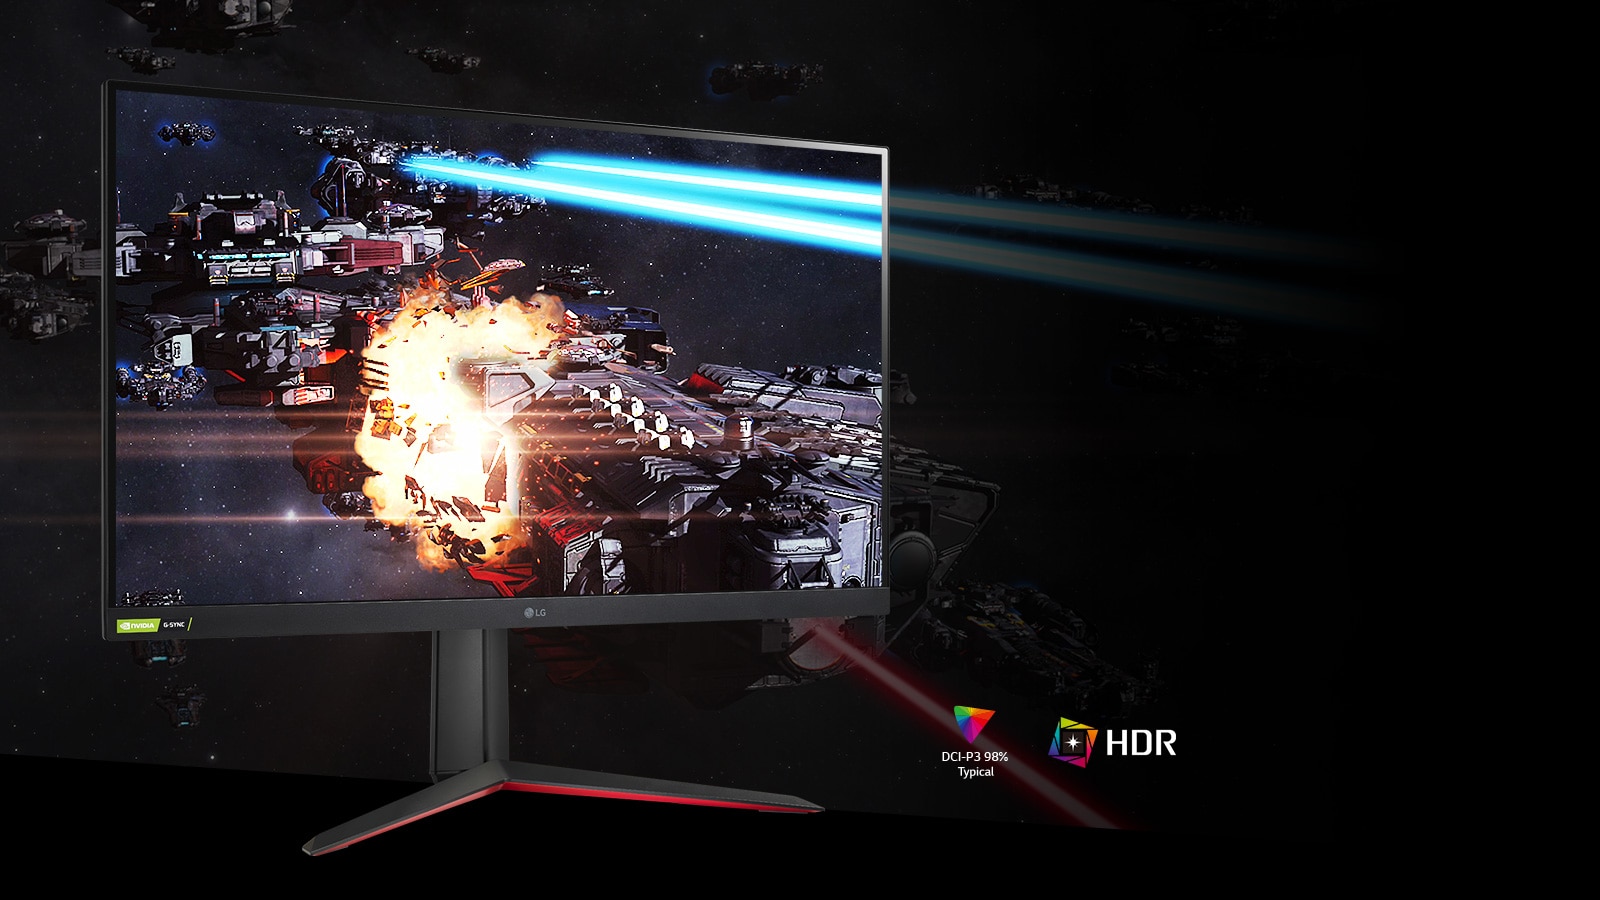 Scena z gry o bogatej szacie kolorystycznej i z wysokim kontrastem na monitorze obsługującym HDR10 i pokrywającym 98% palety DCI-P3 (typ.)